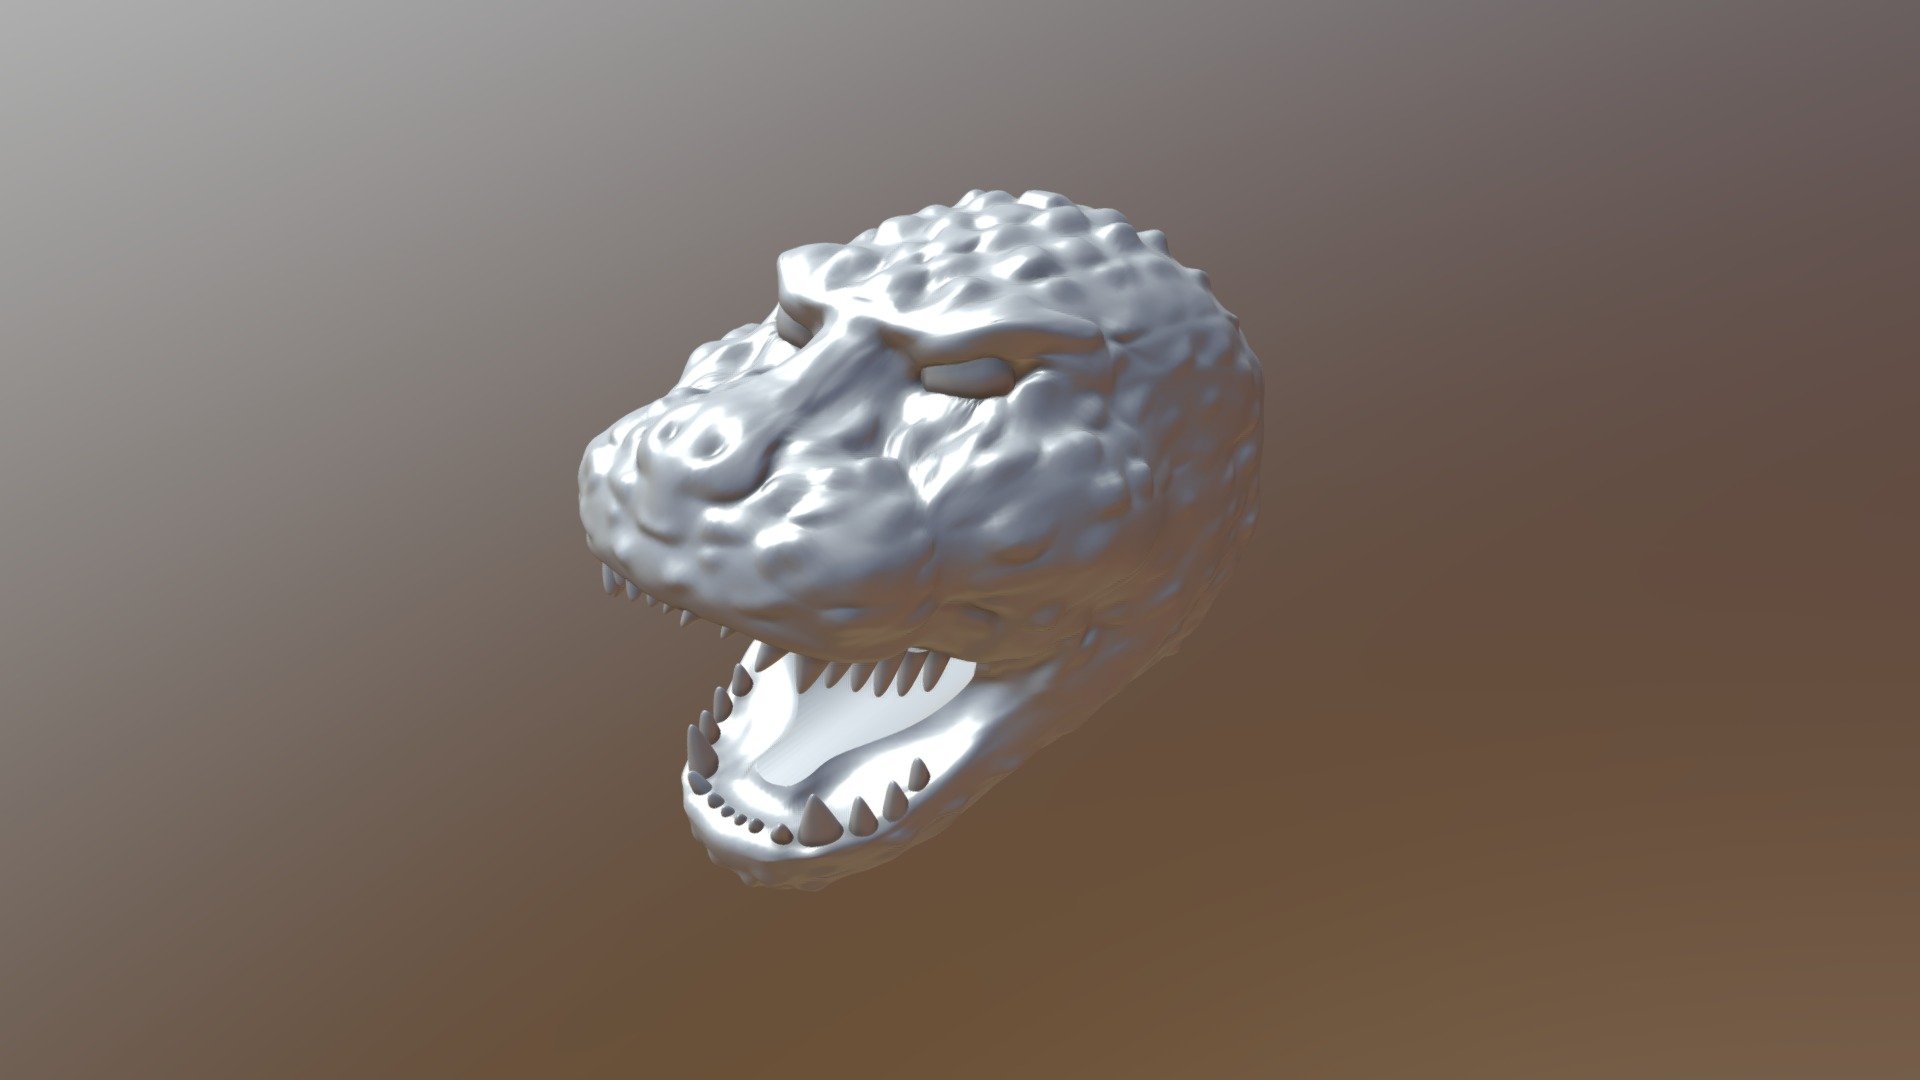 Godzilla Head Piece - 3D model by jrs100000 3d model